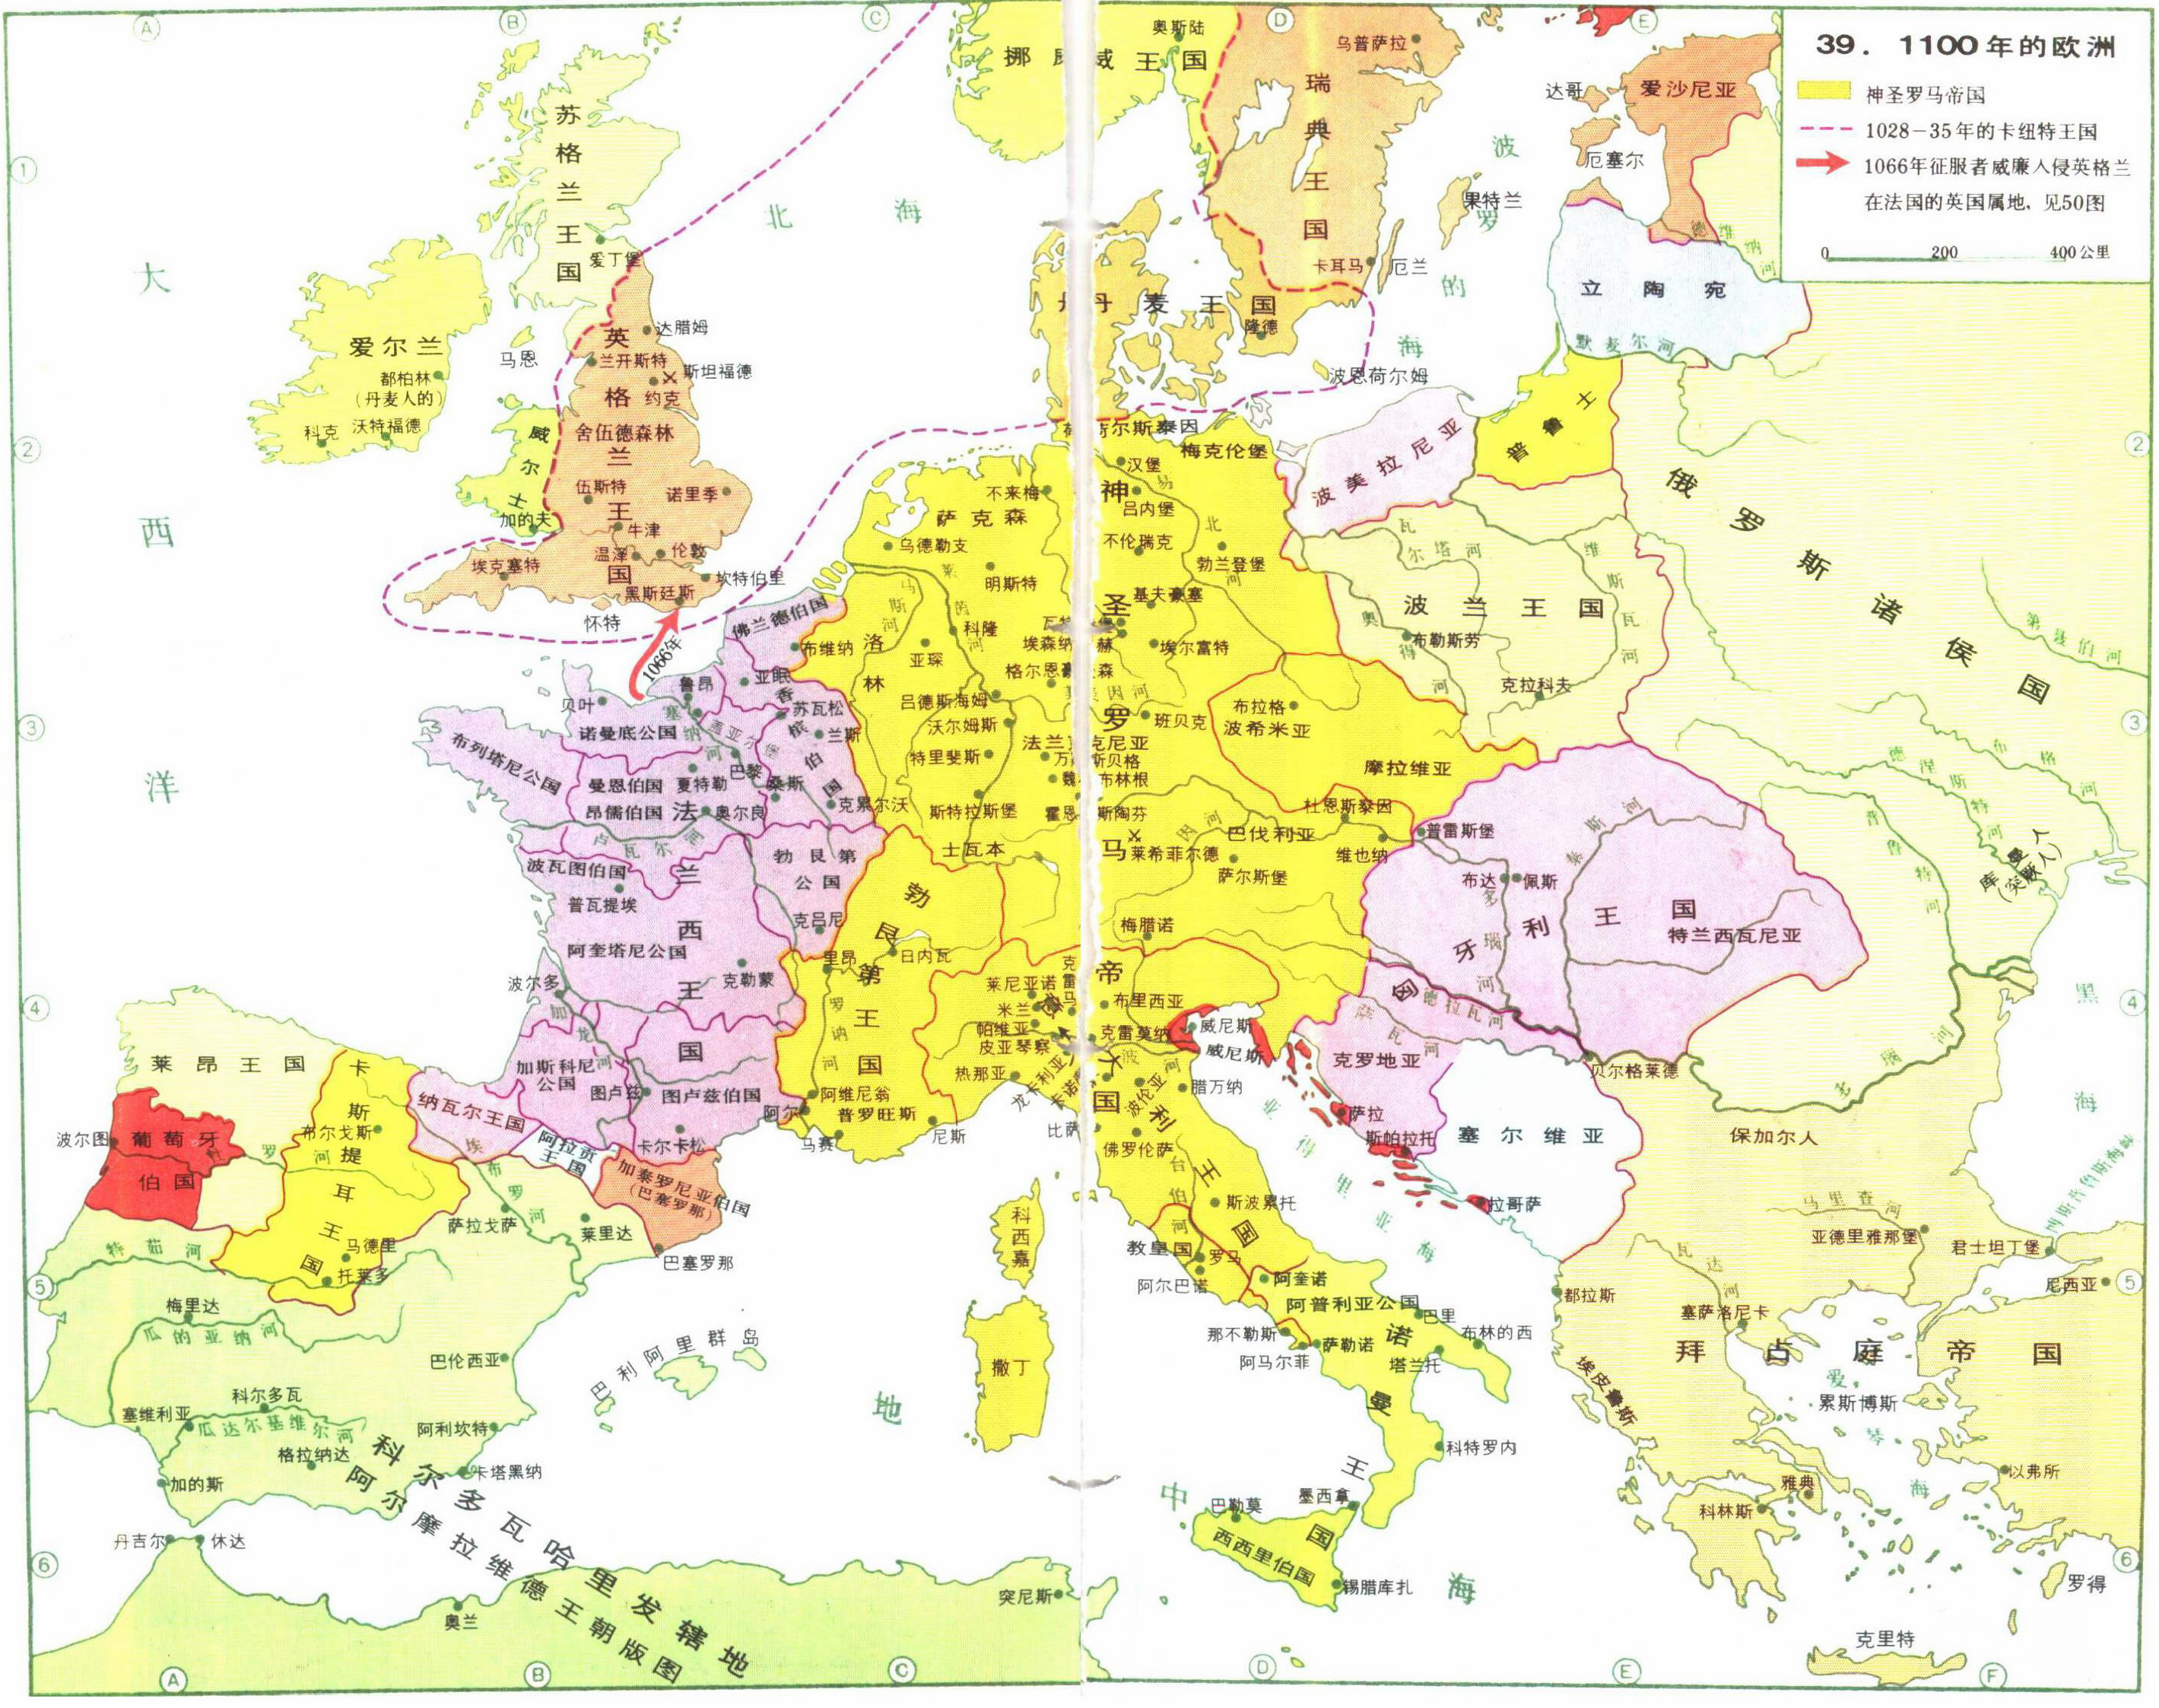 公元12世纪,进入欧洲的中世纪